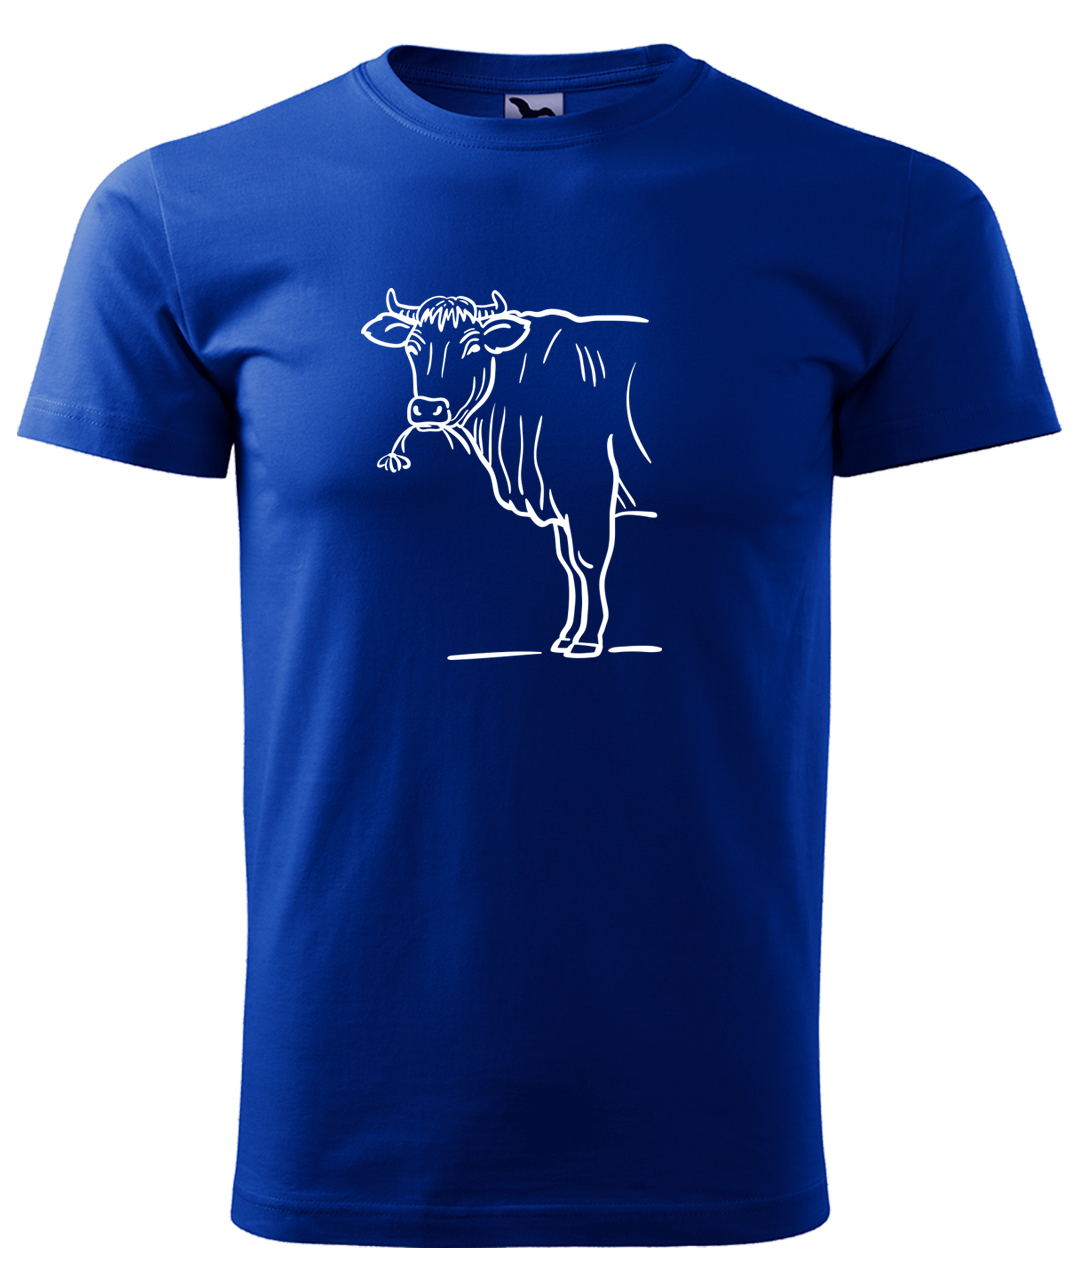 Dětské tričko s krávou - Býk Velikost: 8 let / 134 cm, Barva: Královská modrá (05), Délka rukávu: Krátký rukáv